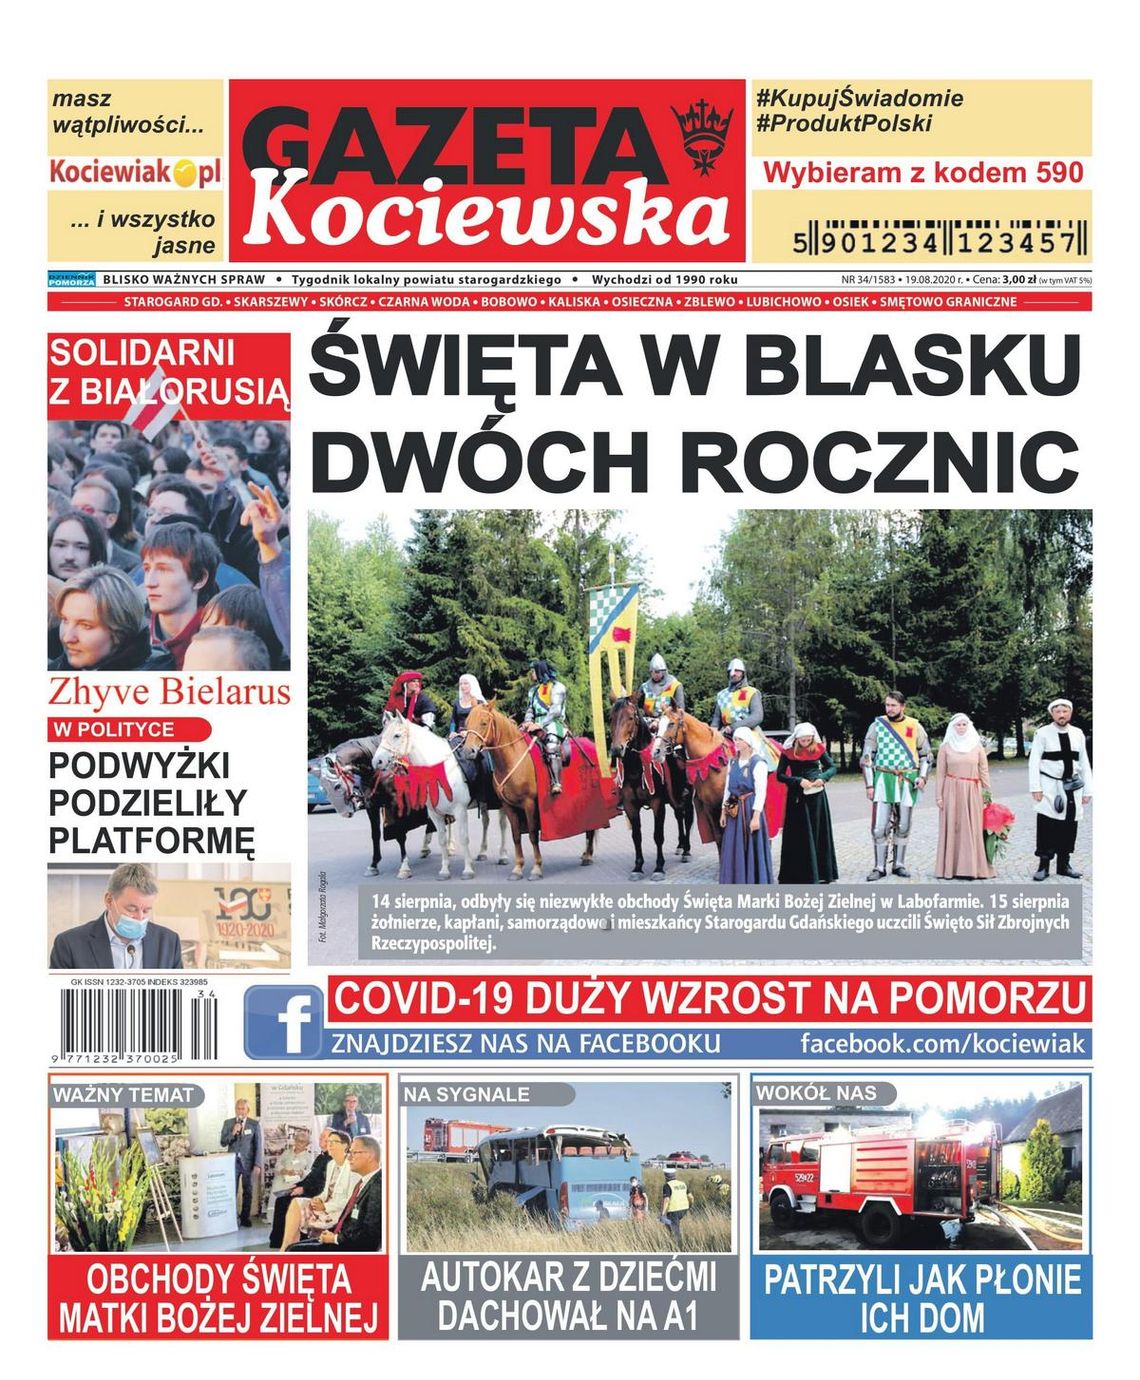 Dzisiejszy numer naszej gazety zdominowały dwa święta: Matki Bożej Zielnej i  Zbrojnych Rzeczypospolitej